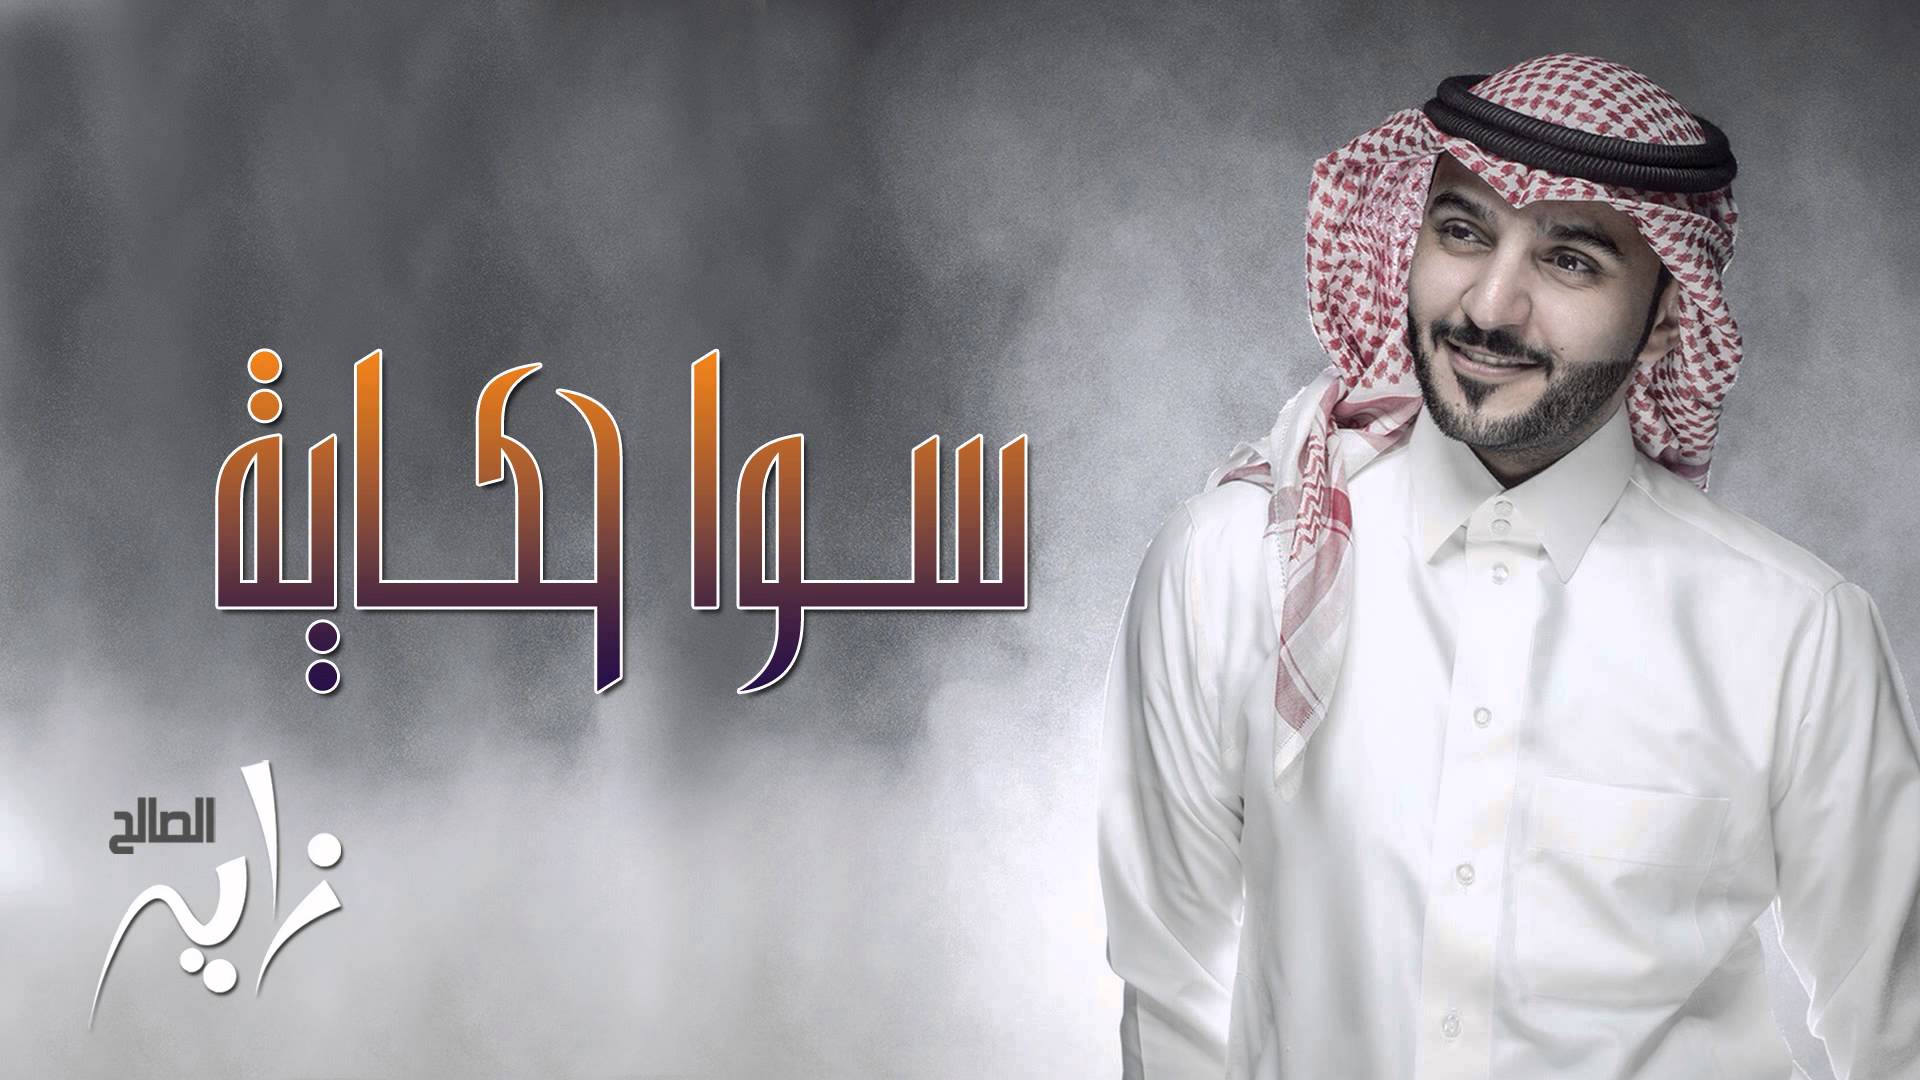 يوتيوب تحميل اغنية سوا حكاية زايد الصالح 2015 Mp3